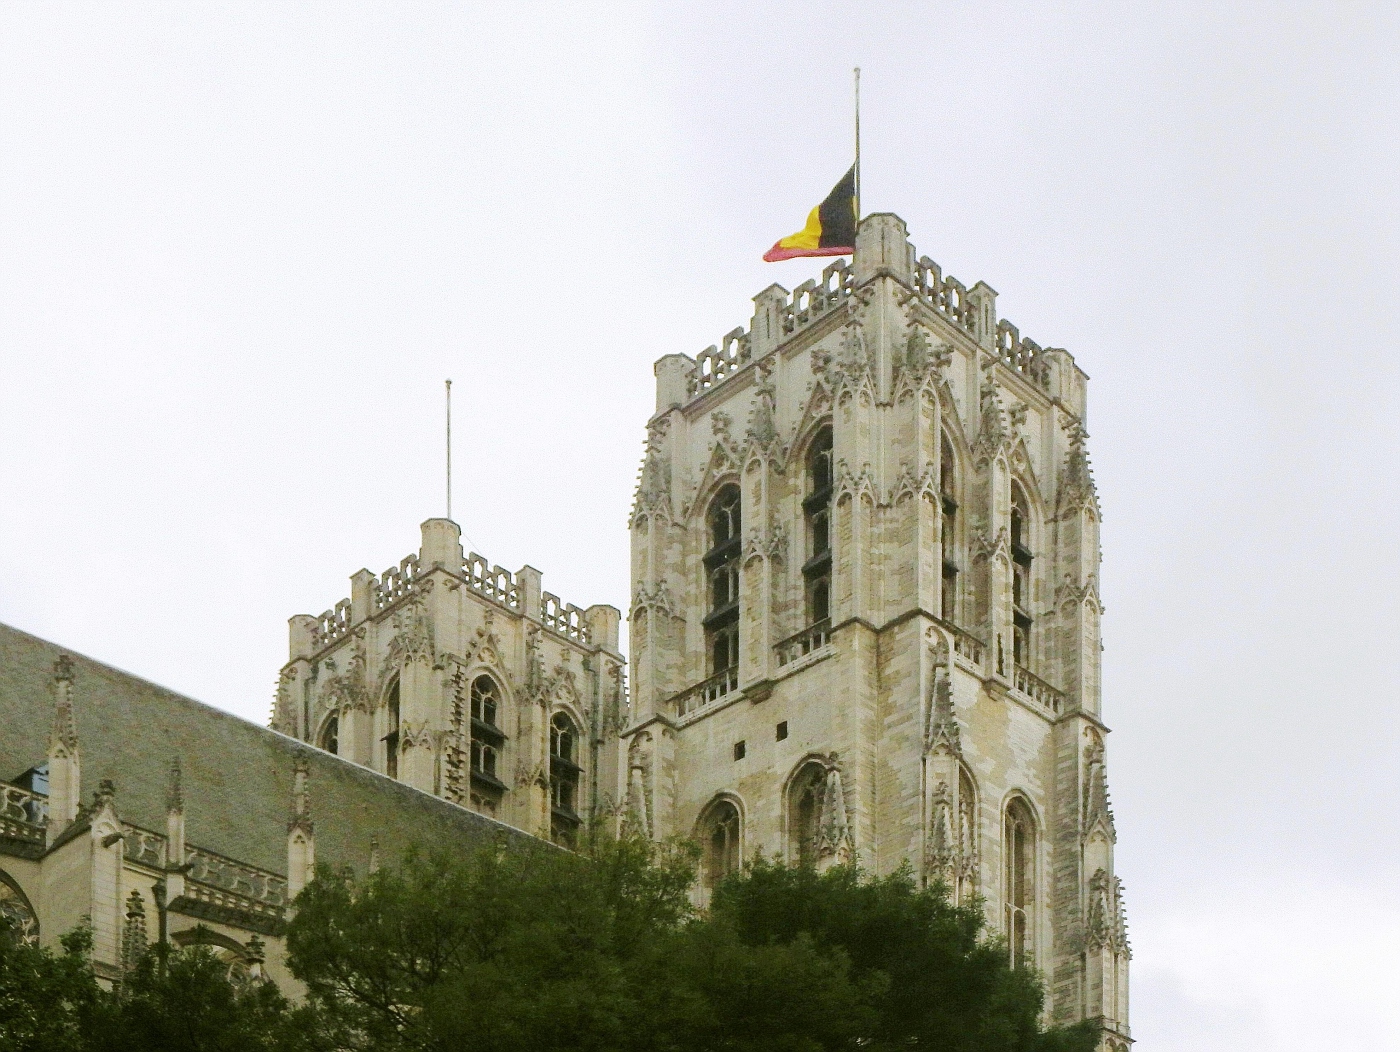 Cathédrale Saint Michel et Gudule